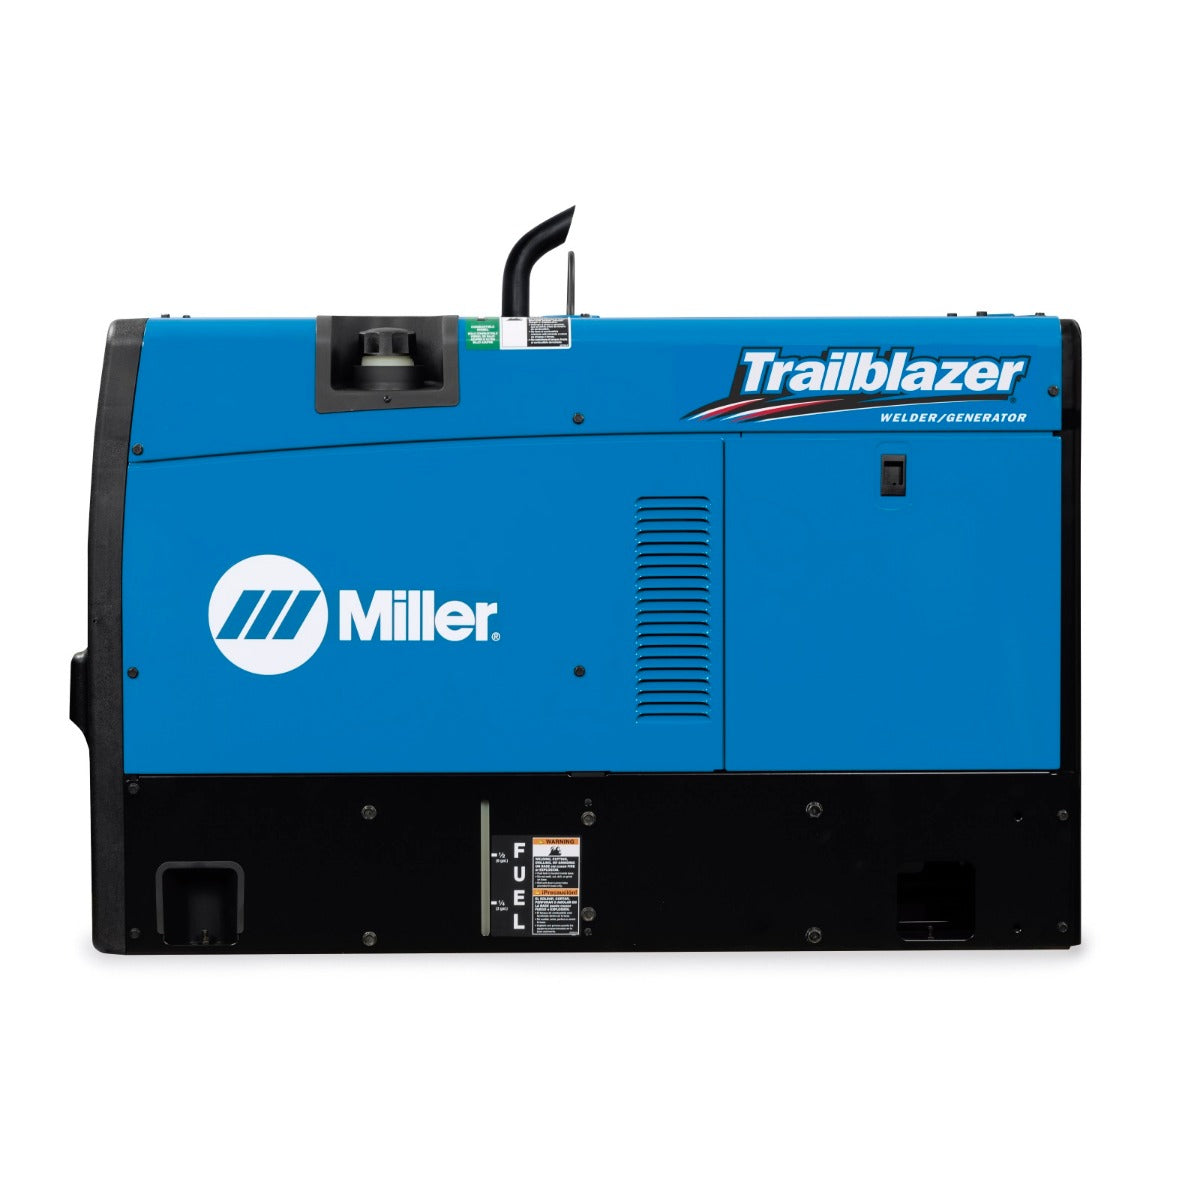 Miller Trailblazer 325 Kubota Diesel w/Excel Power, GFCI, and ArcReach - 907799002